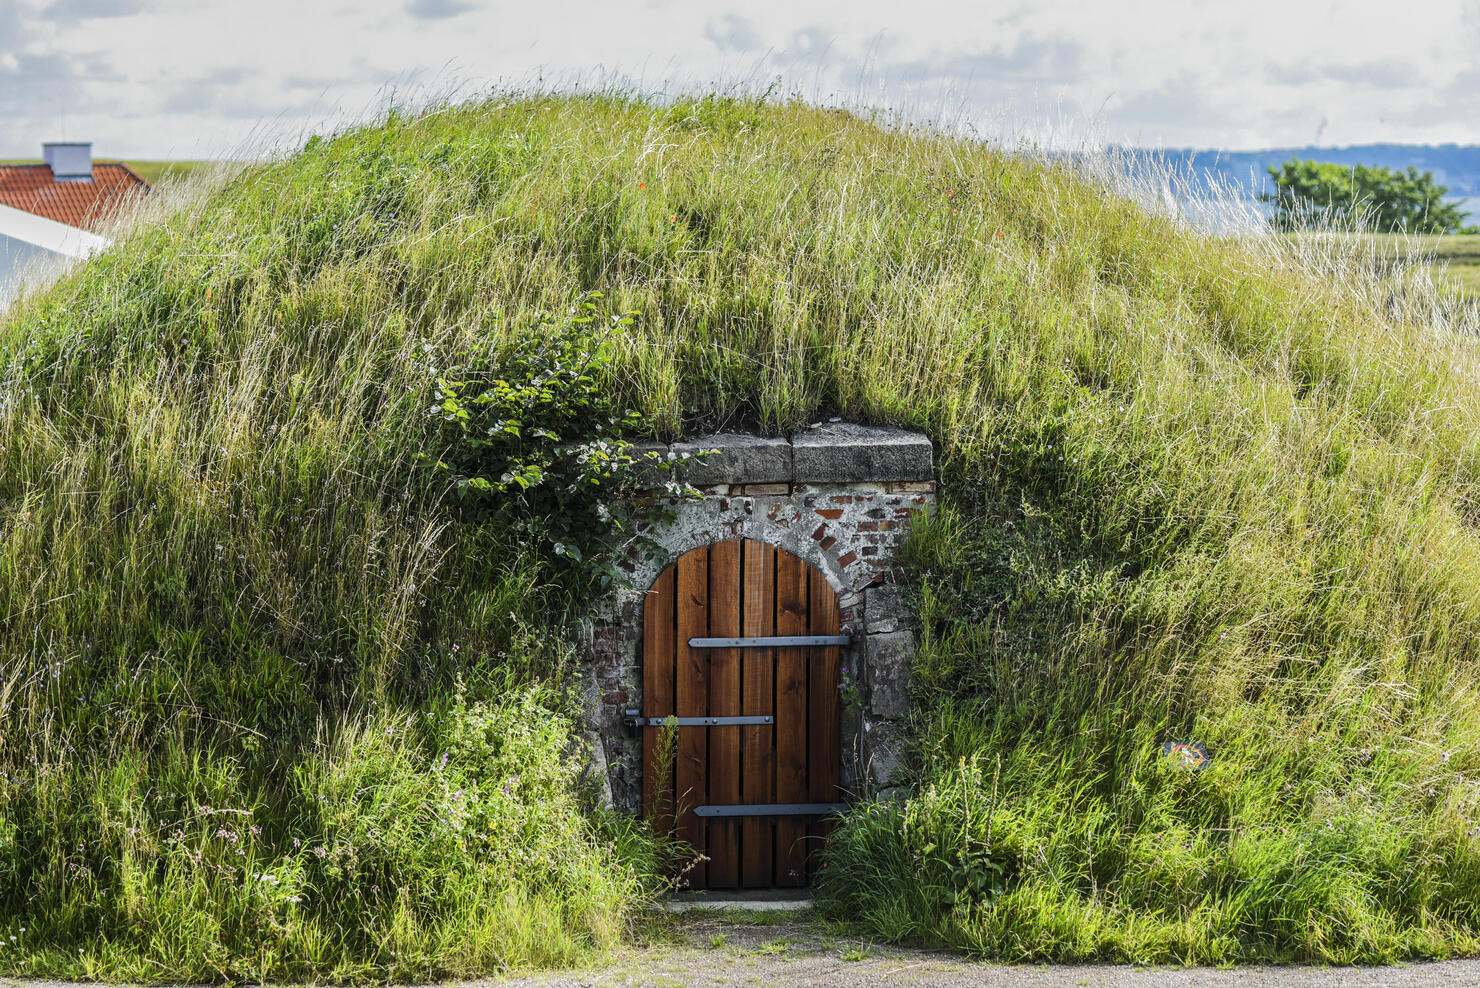 A hut in the ground under the grass in Denmark.